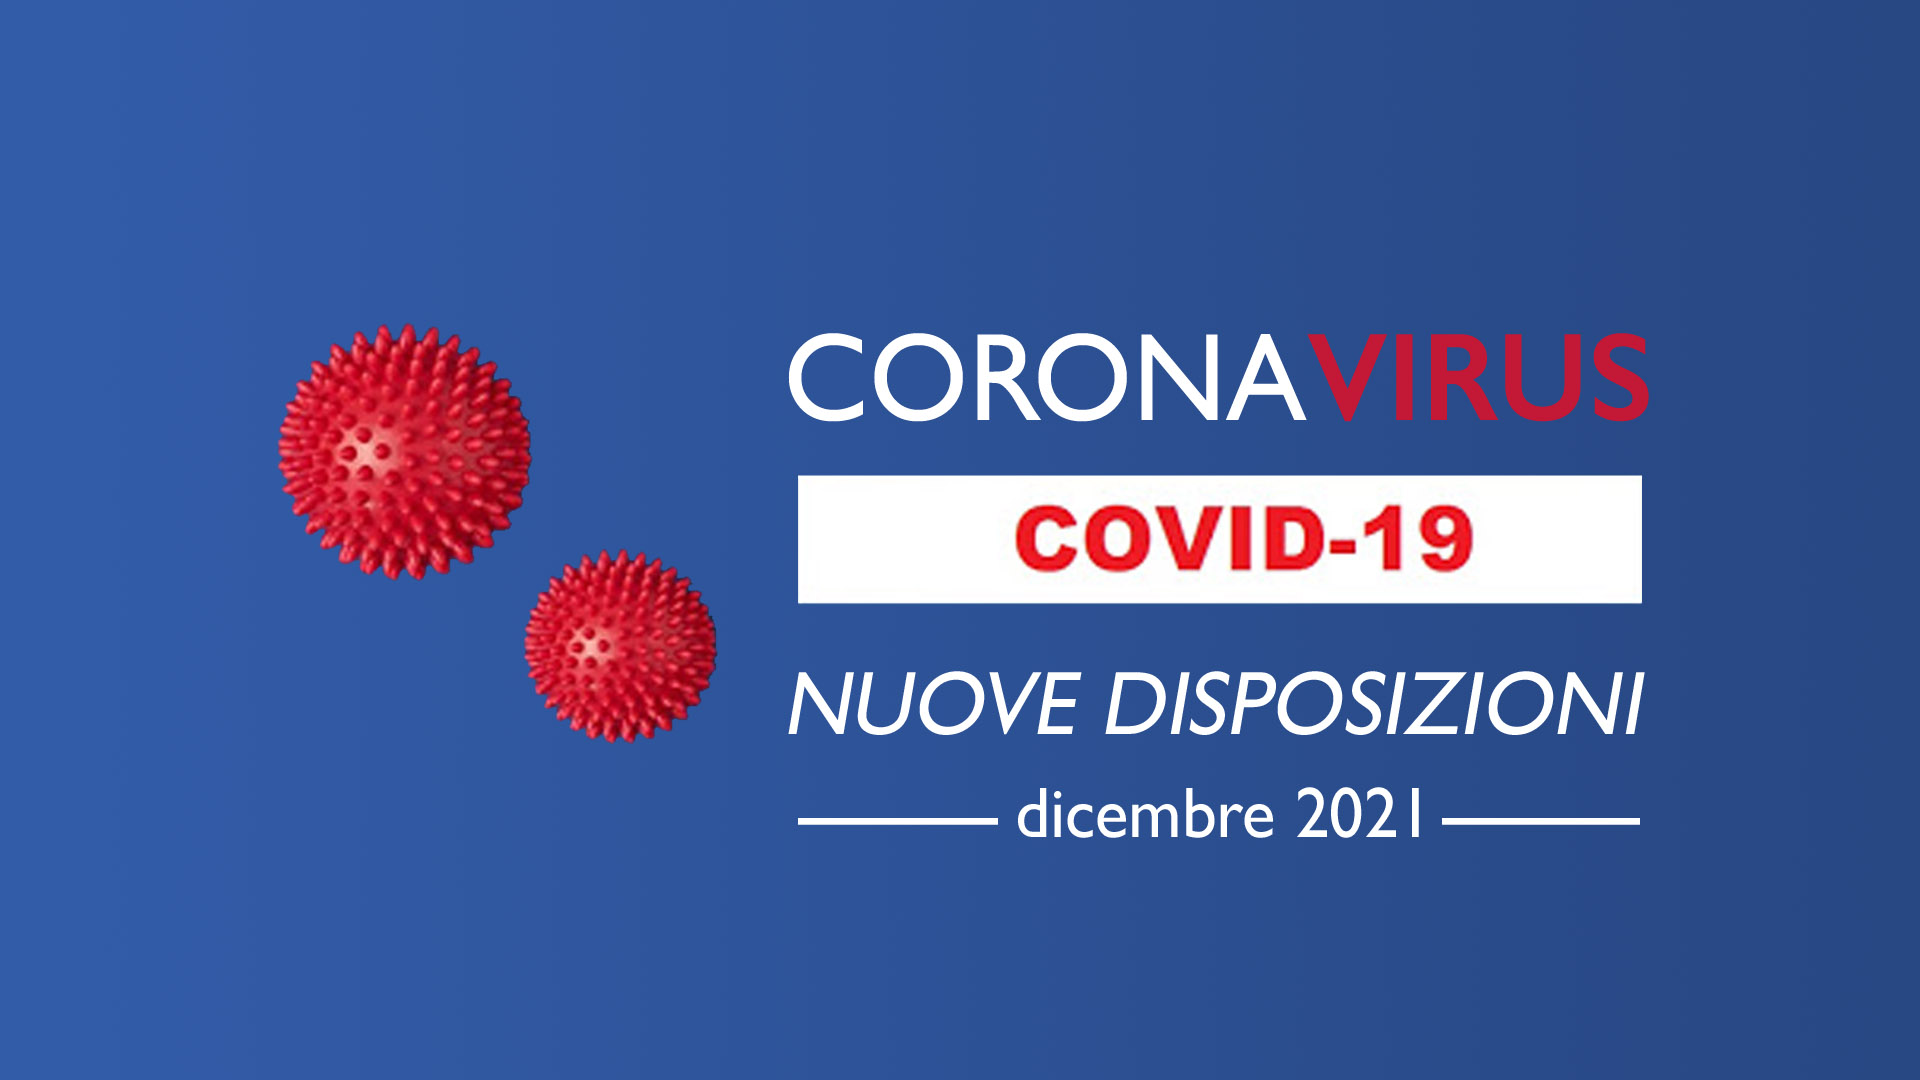 Nuove disposizioni coronavirus dicembre 2021